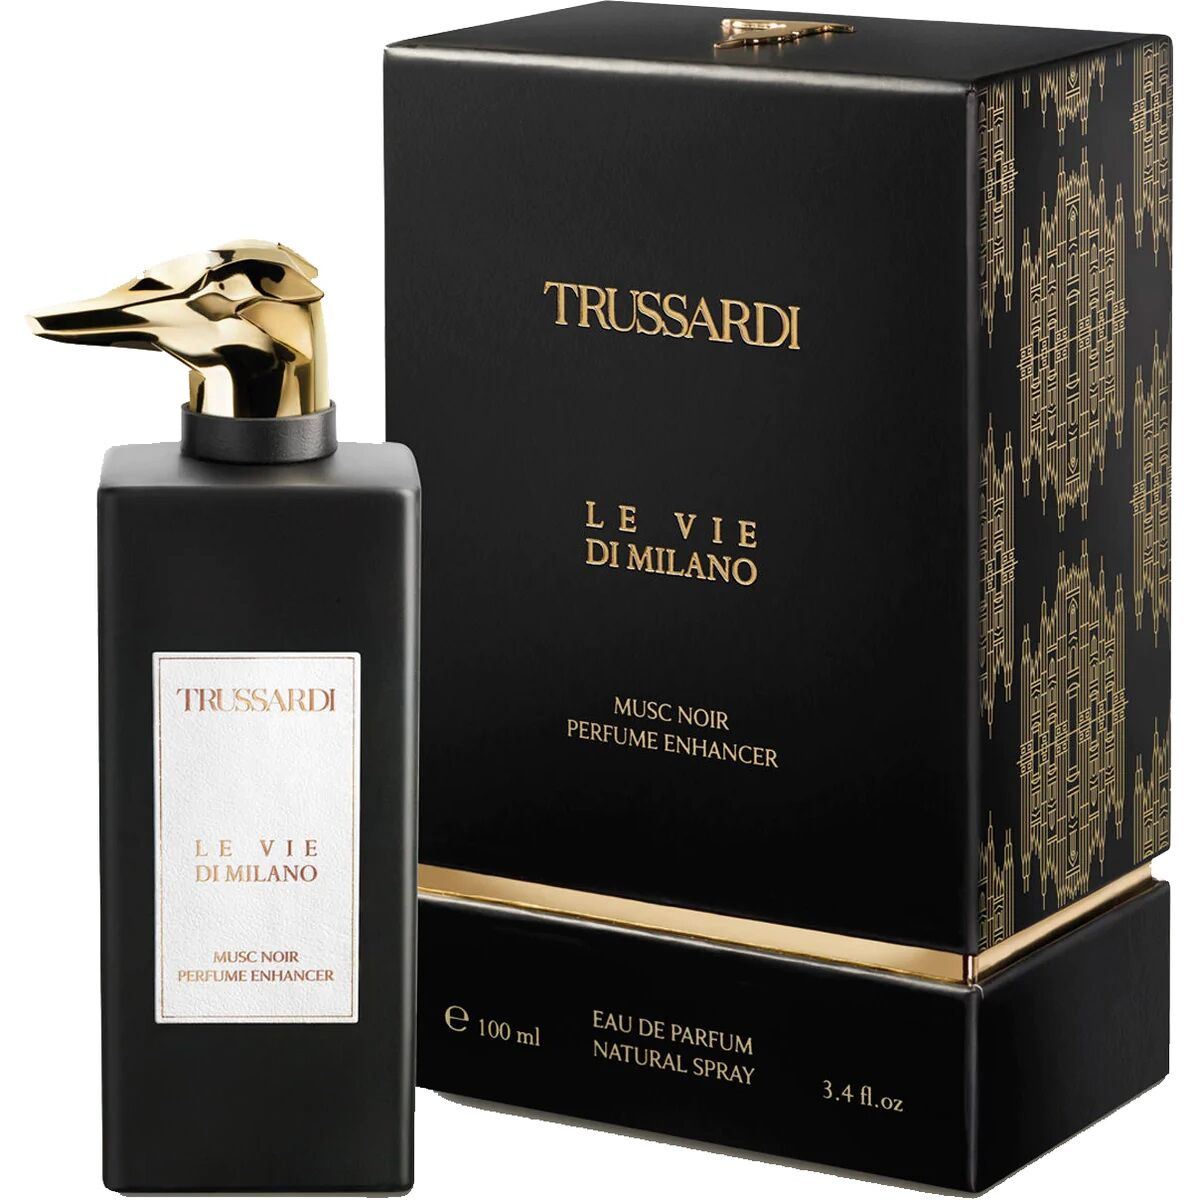 Parfum Unisex Trussardi EDP Le Vie Di Milano Musc Noir Perfume Enhancer (100 ml)